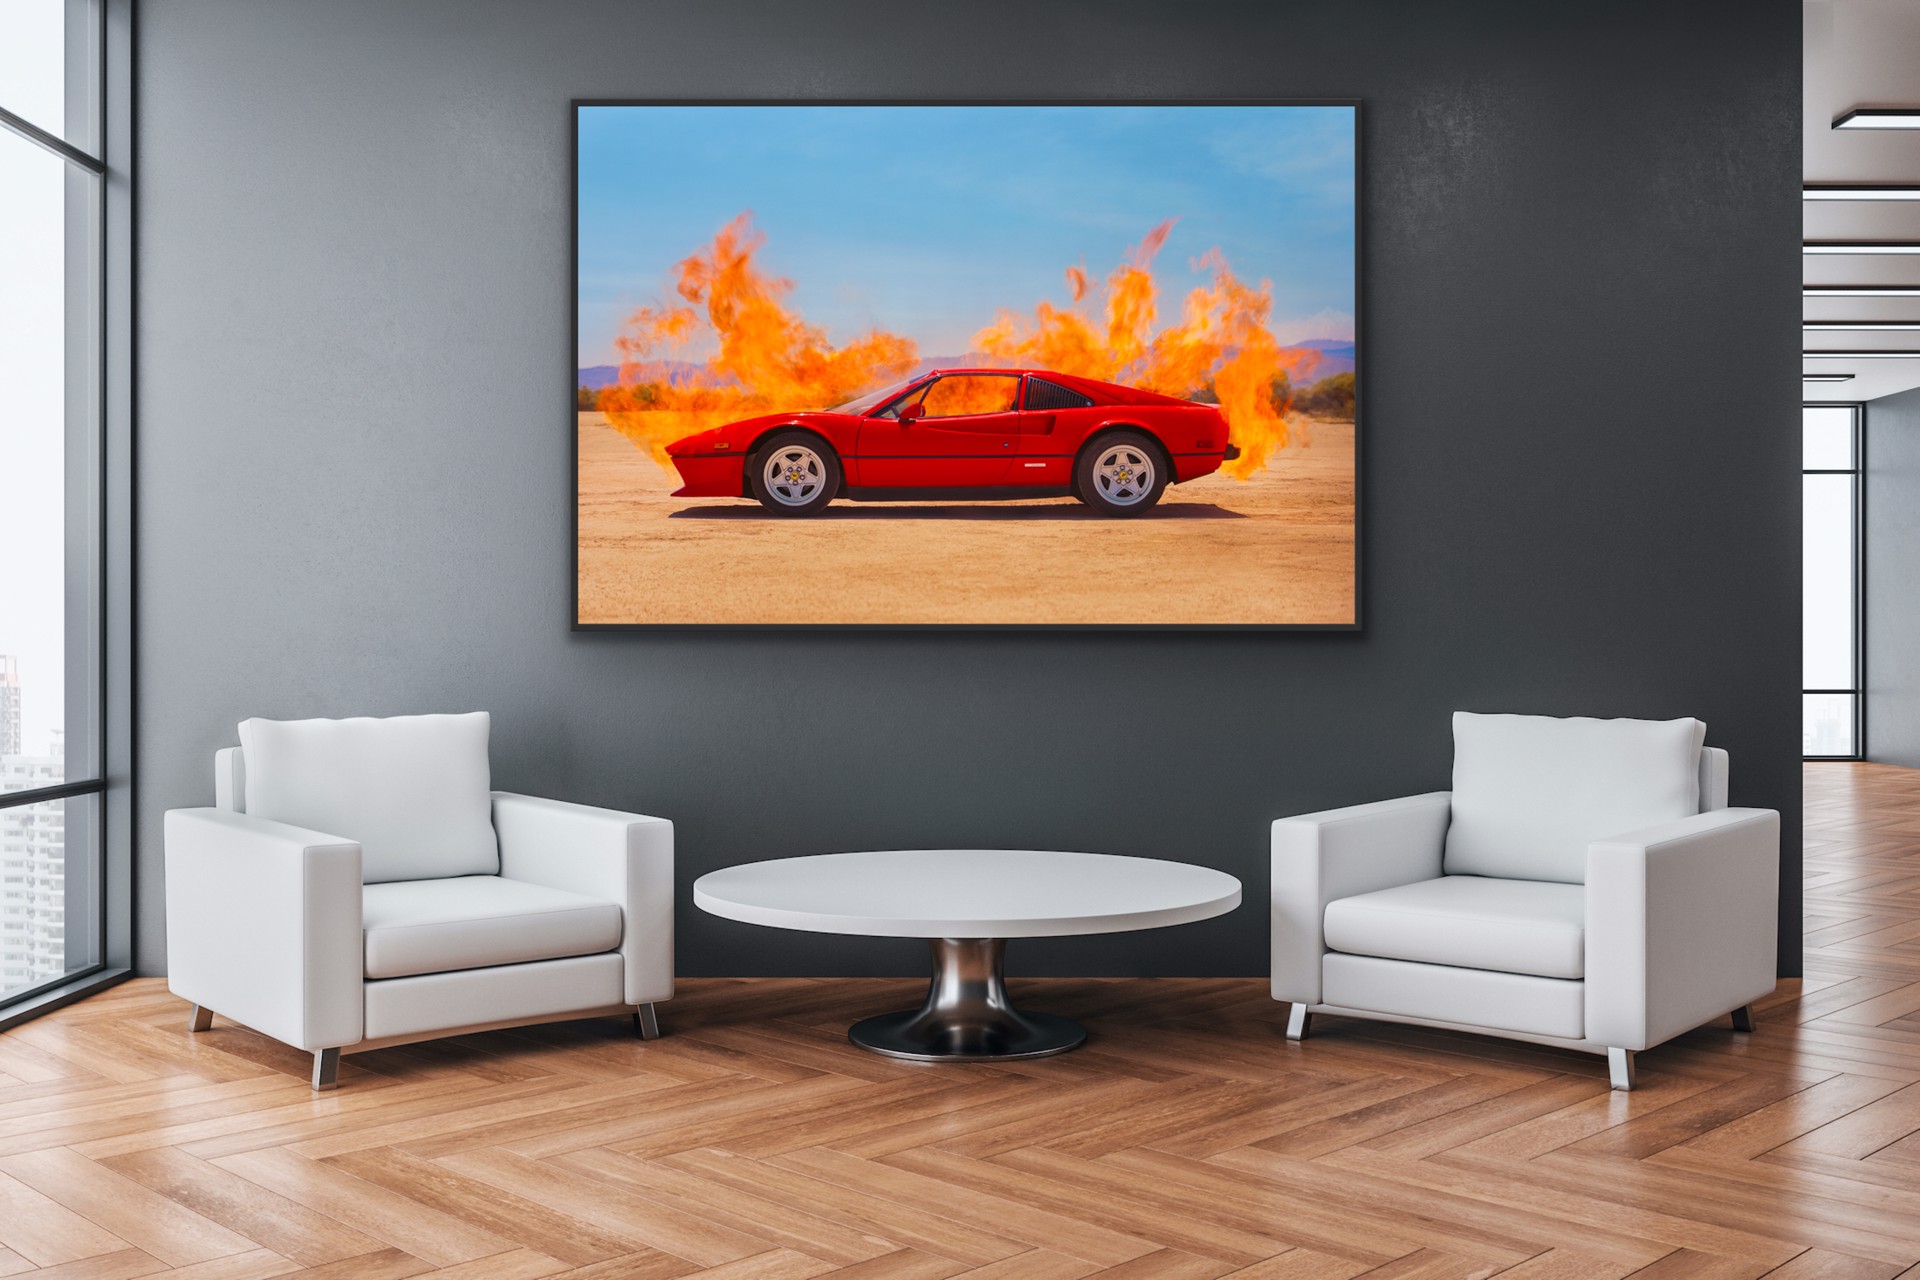 Ferrari on Fire by Tyler Shields